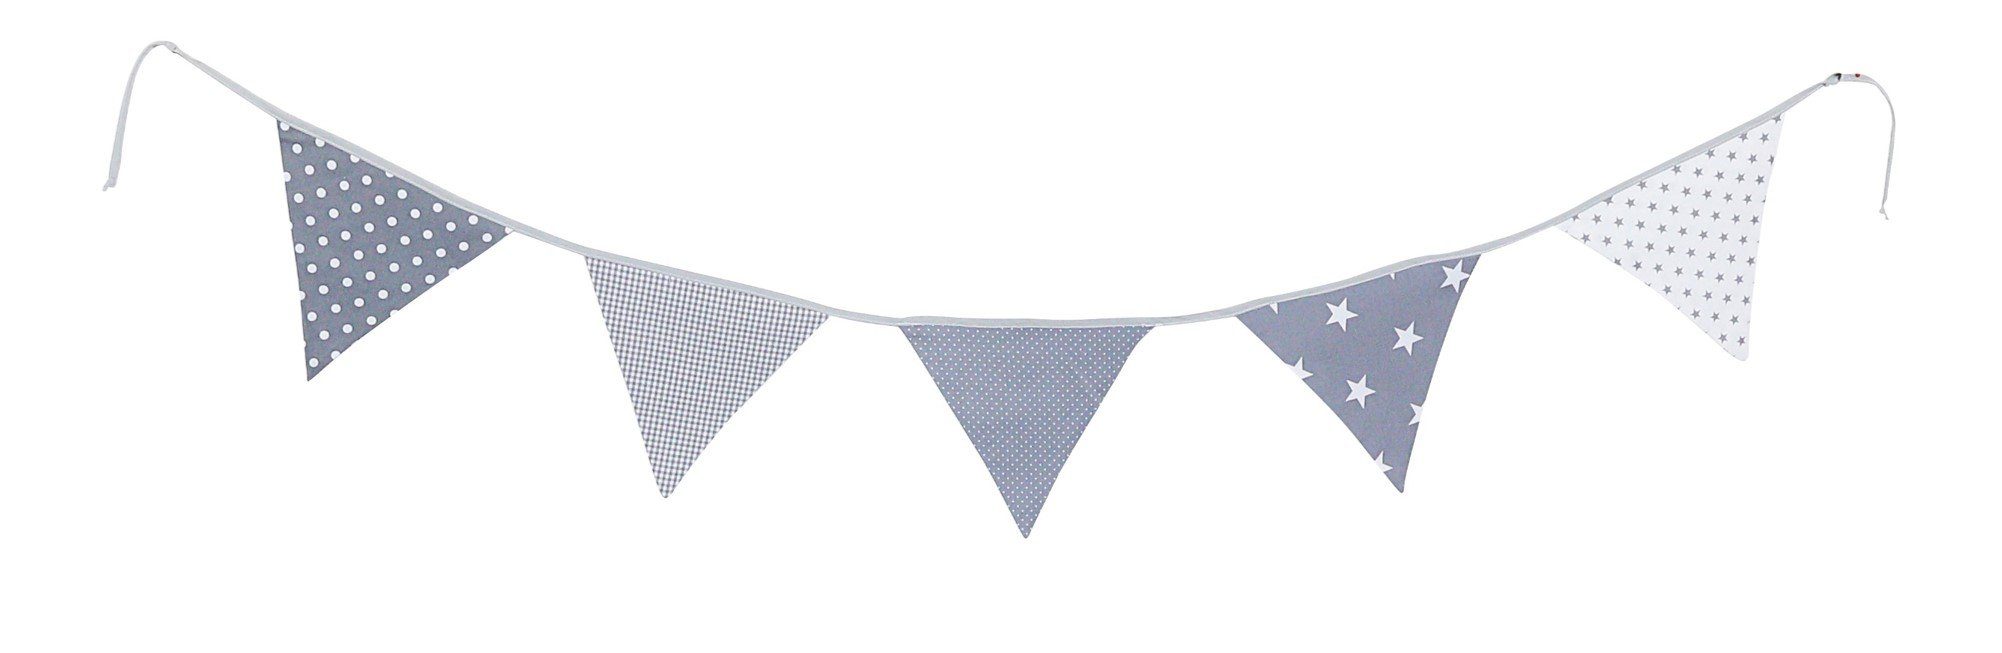 ULLENBOOM ® Wimpelkette Wimpelkette Graue Sterne 190 cm mit 5 Wimpeln (Made in EU), Deko-Girlande aus Stoff für das Kinderzimmer, 100% Baumwolle | Partydekoration